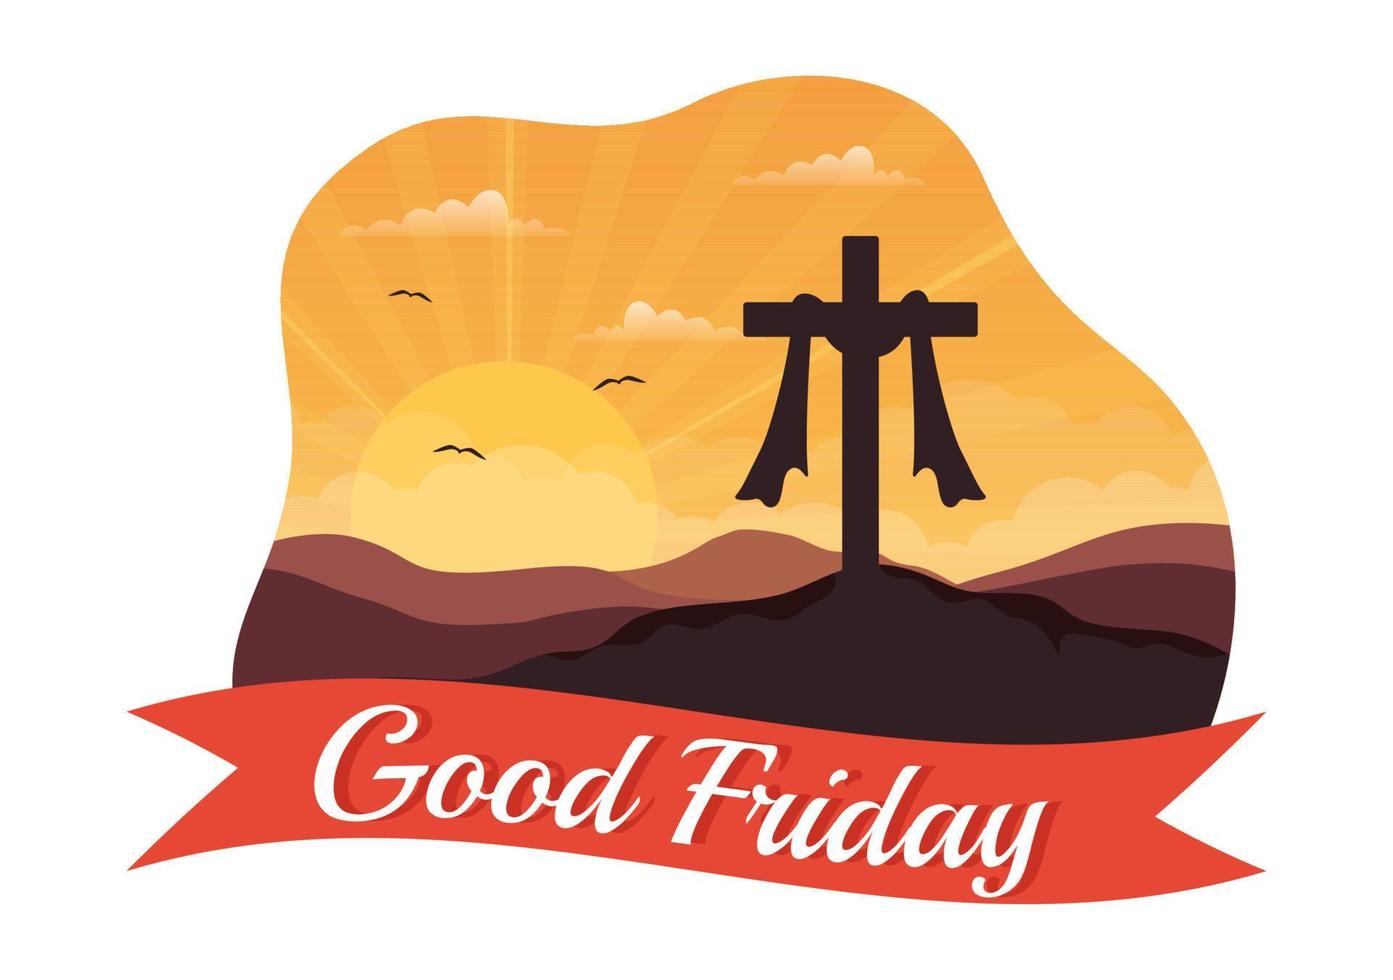 Lycklig Bra fredag illustration med kristen Semester av Jesus christ crucifixion i platt tecknad serie hand dragen för webb baner eller landning sida mallar vektor